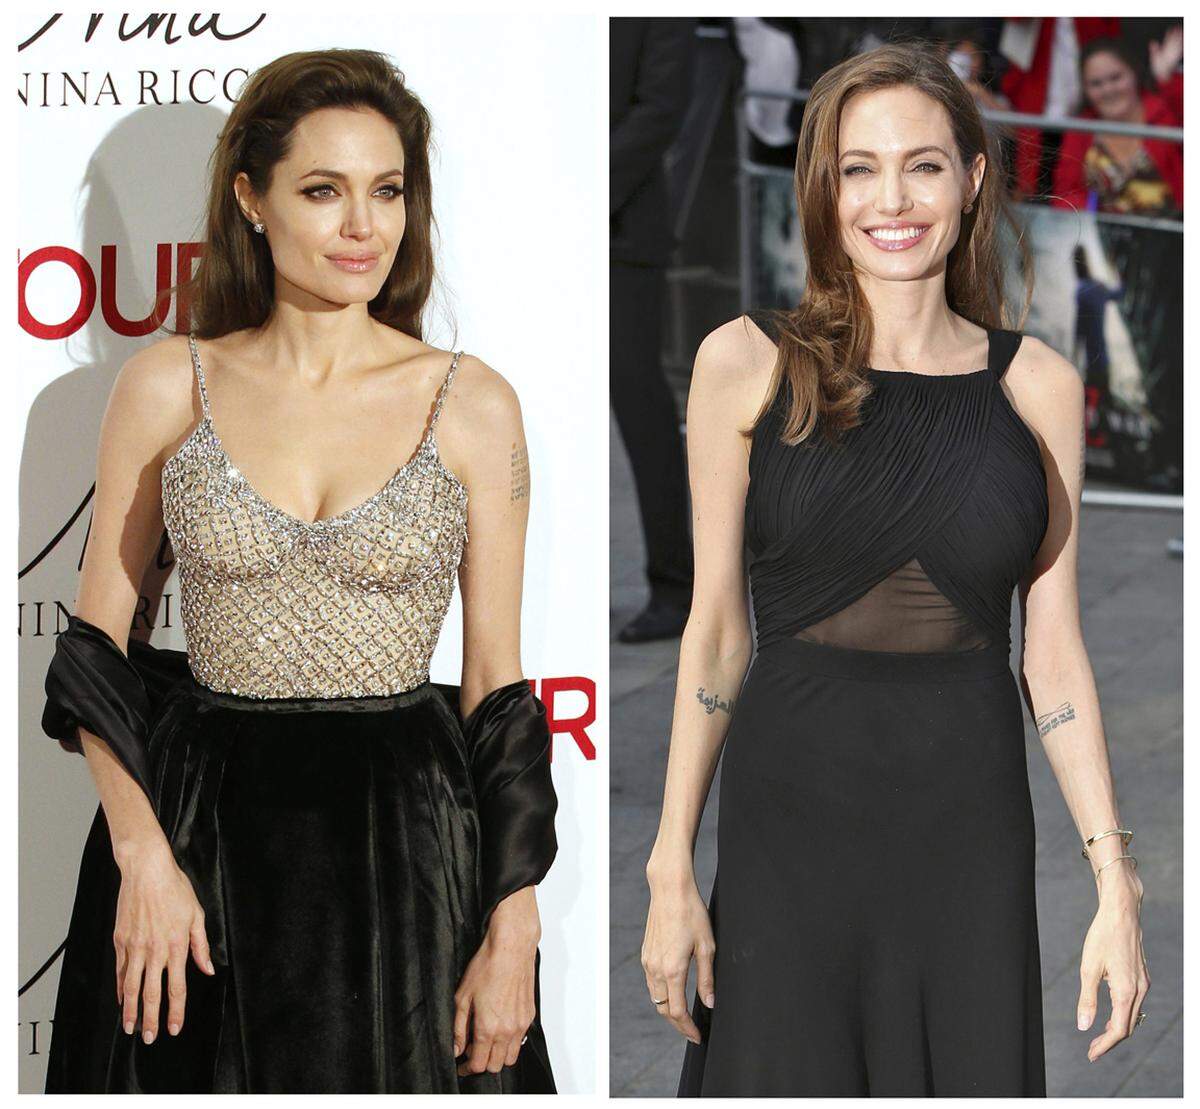 Vor zwei Jahren hat sich Jolie ihre Brüste und im März auch ihre Eierstöcke entfernen lassen. Sie hatte Angst vor Krebs, an dem ihre Großmutter, ihre Tante und ihre Mutter starben. Sie trat eine Diskussion los und wurde für viele Frauen zum Vorbild.